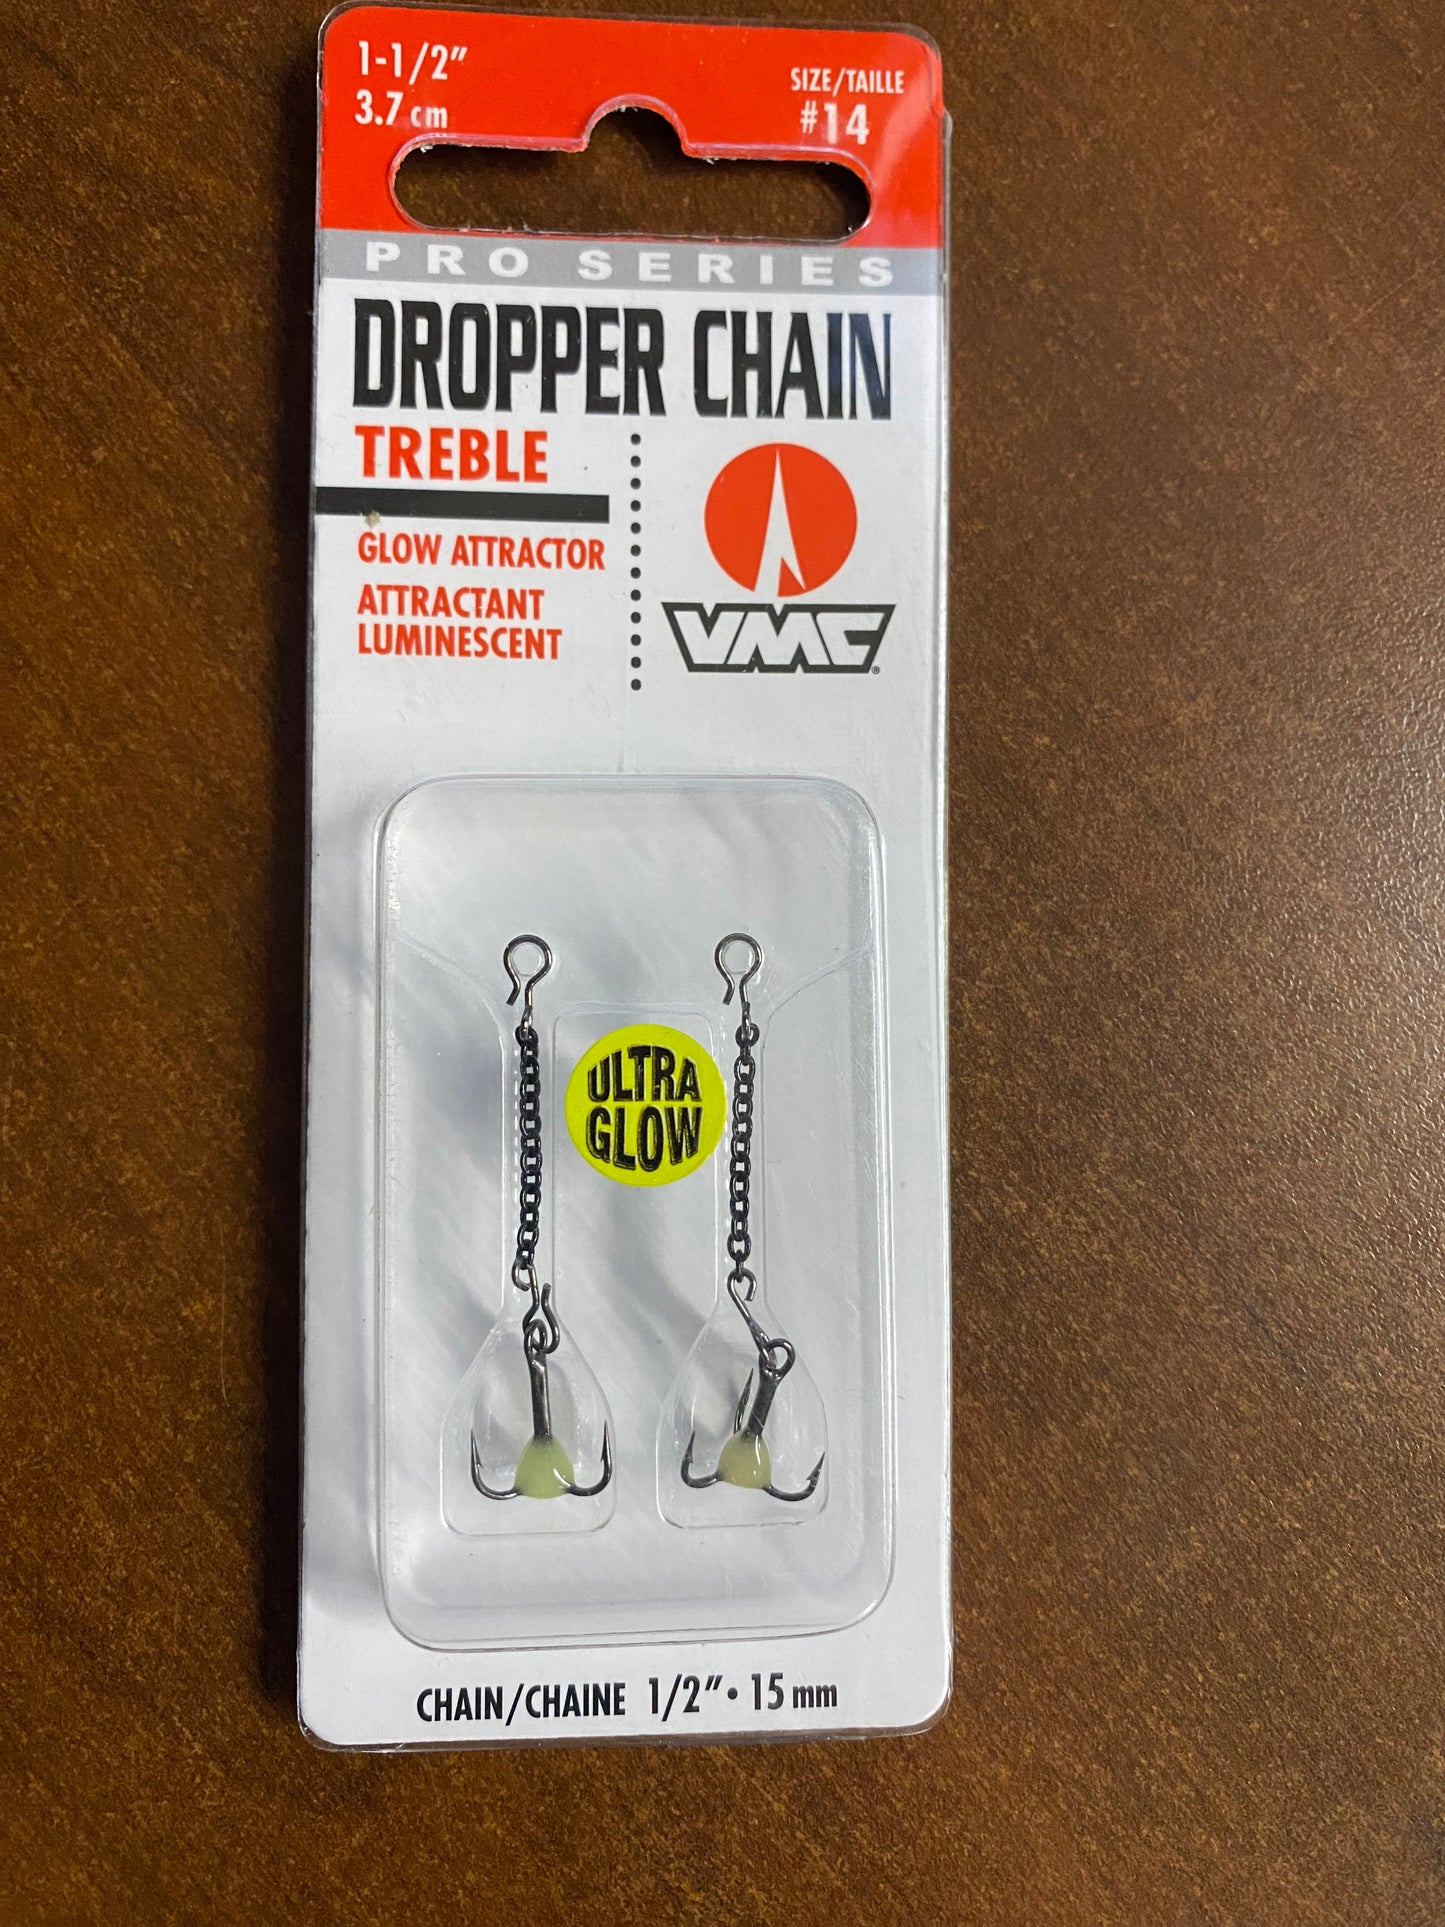 Pro Series Dropper Chain